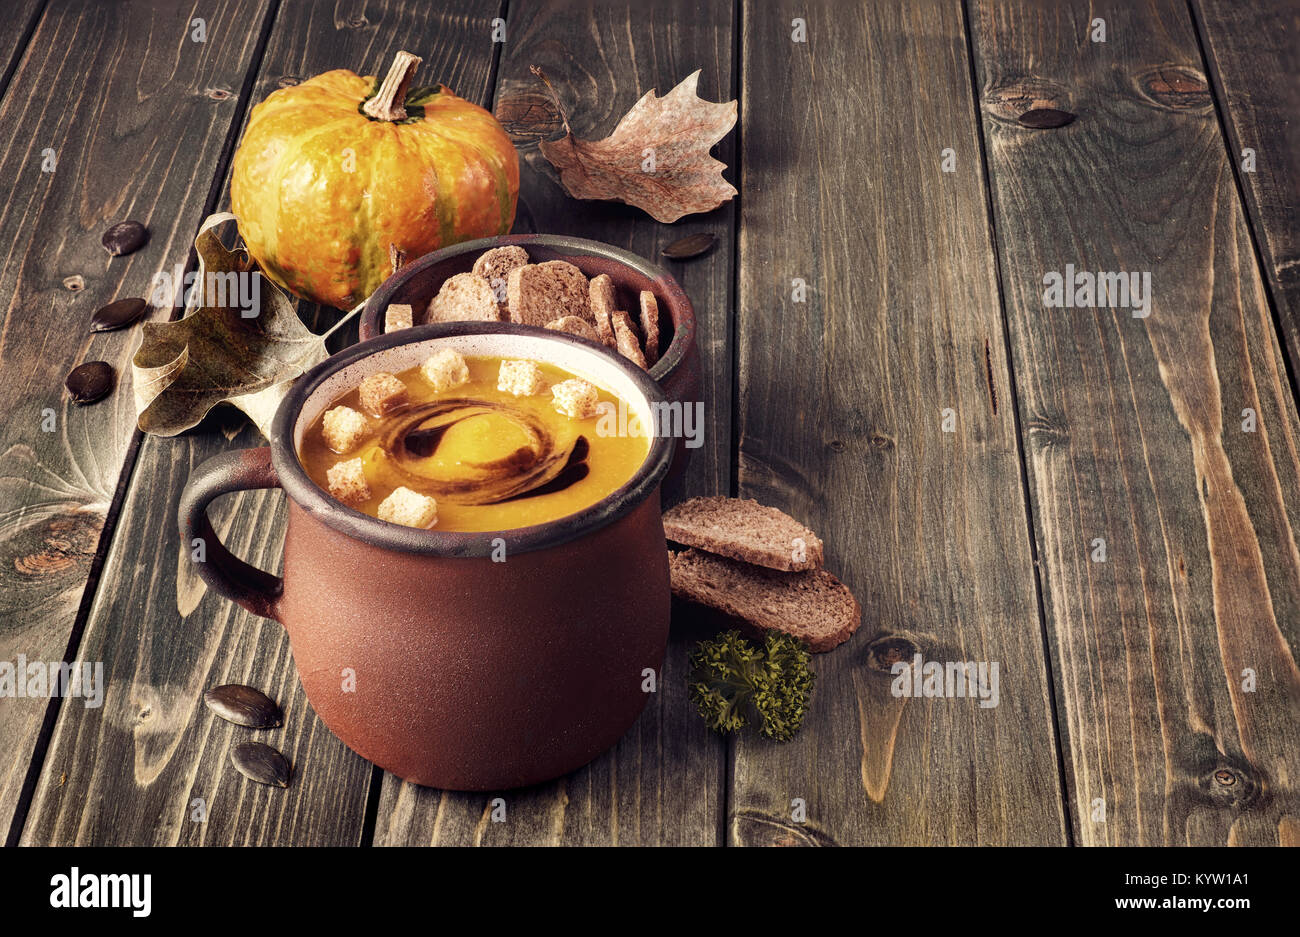 Soupe de potiron savoureux dans old enamel mug sur la table en bois rustique. La soupe est servie avec des croûtons et de l'huile de citrouille. Cette image est tonique. Banque D'Images